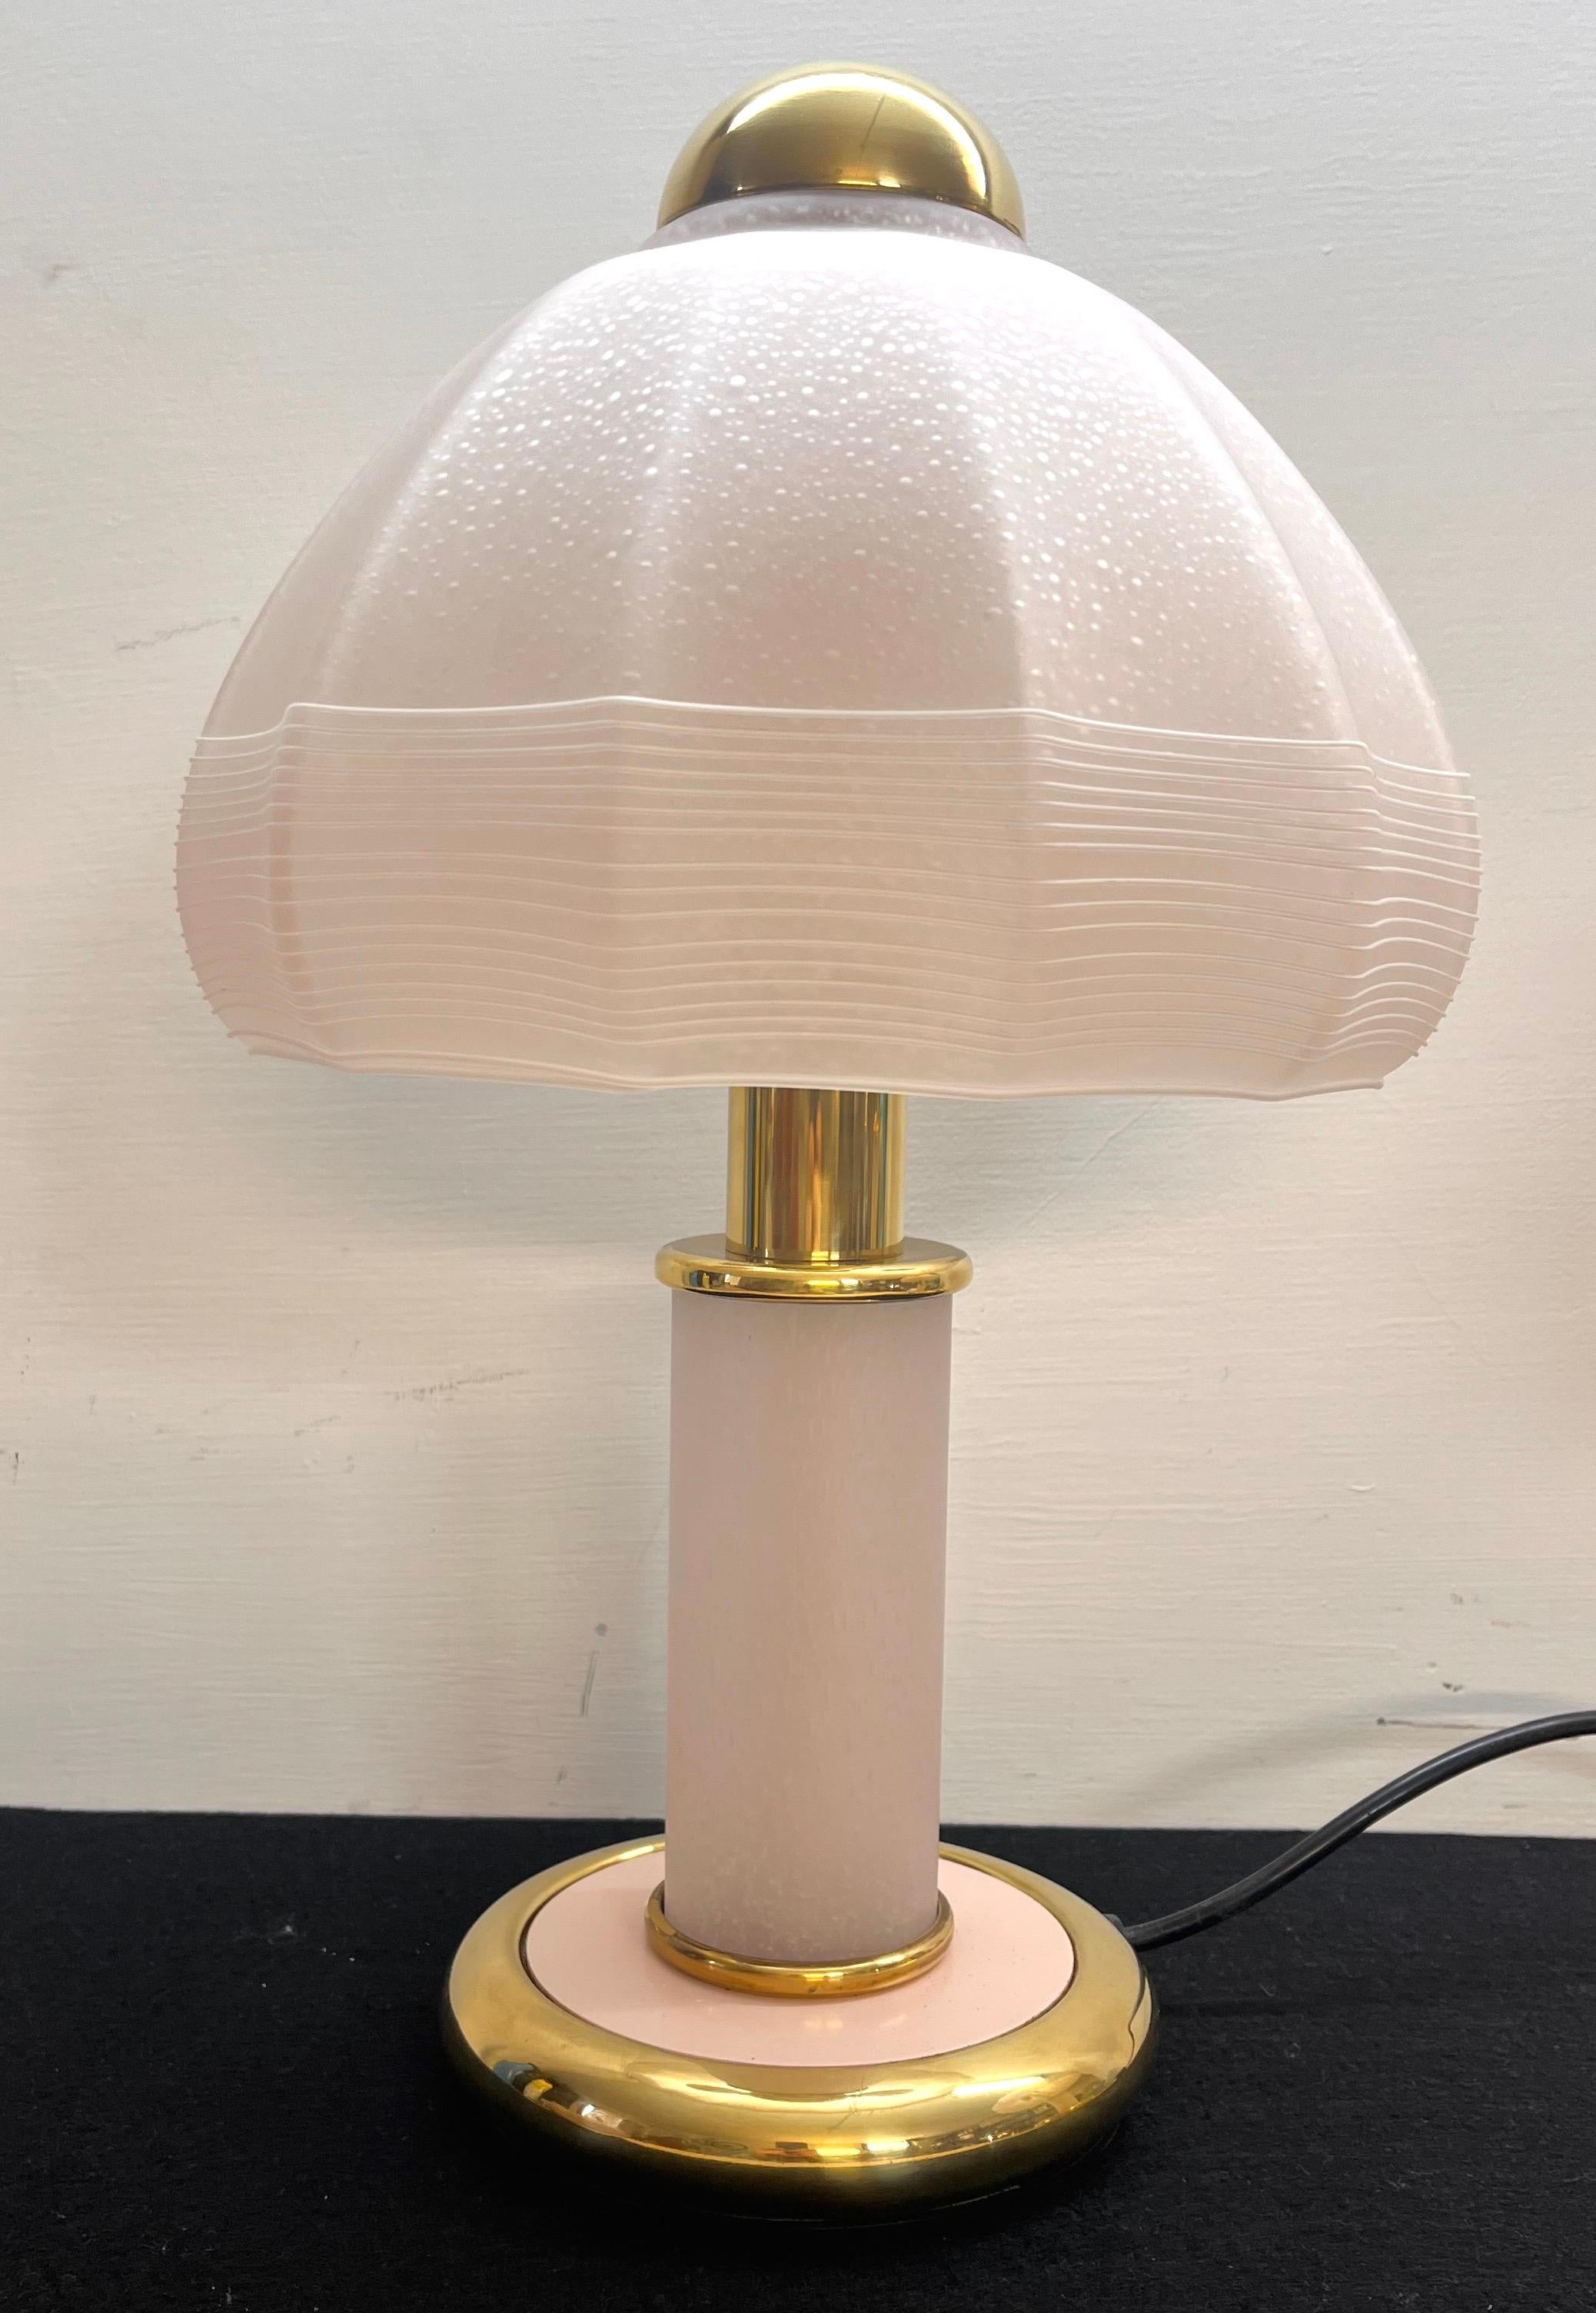 Lampada di F. Fabbian anni 70 vetro di Murano colore rosa con striature bianche vetro integro non scheggiato ottone non graffiato.
In buone condizioni
Dimensioni : Altezza 42 cm diametro cappello 22,5 cm base 15 cm.